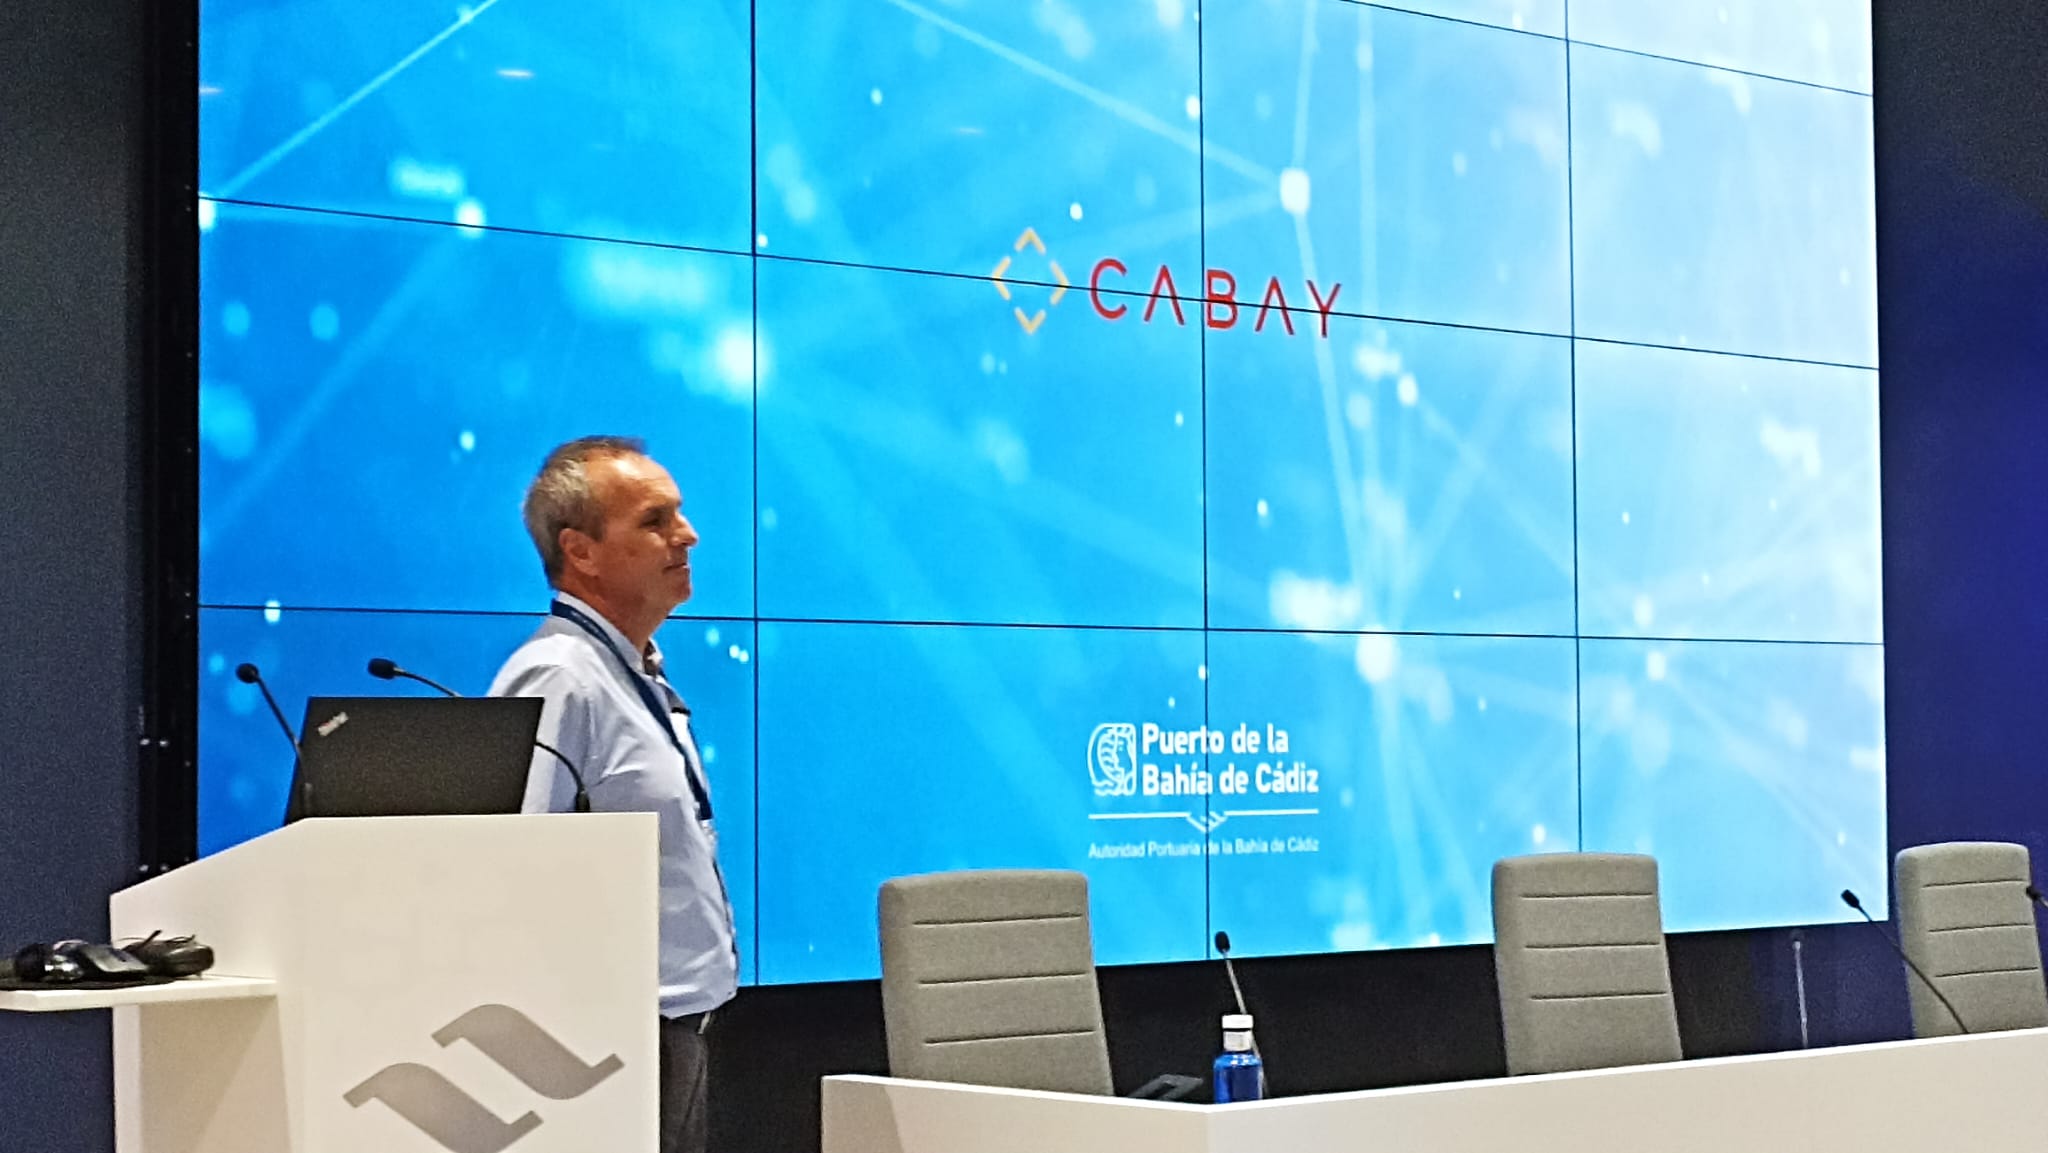 Presentación del proyecto de digitalización CABAY de la Autoridad Portuaria de la Bahía de Cádiz